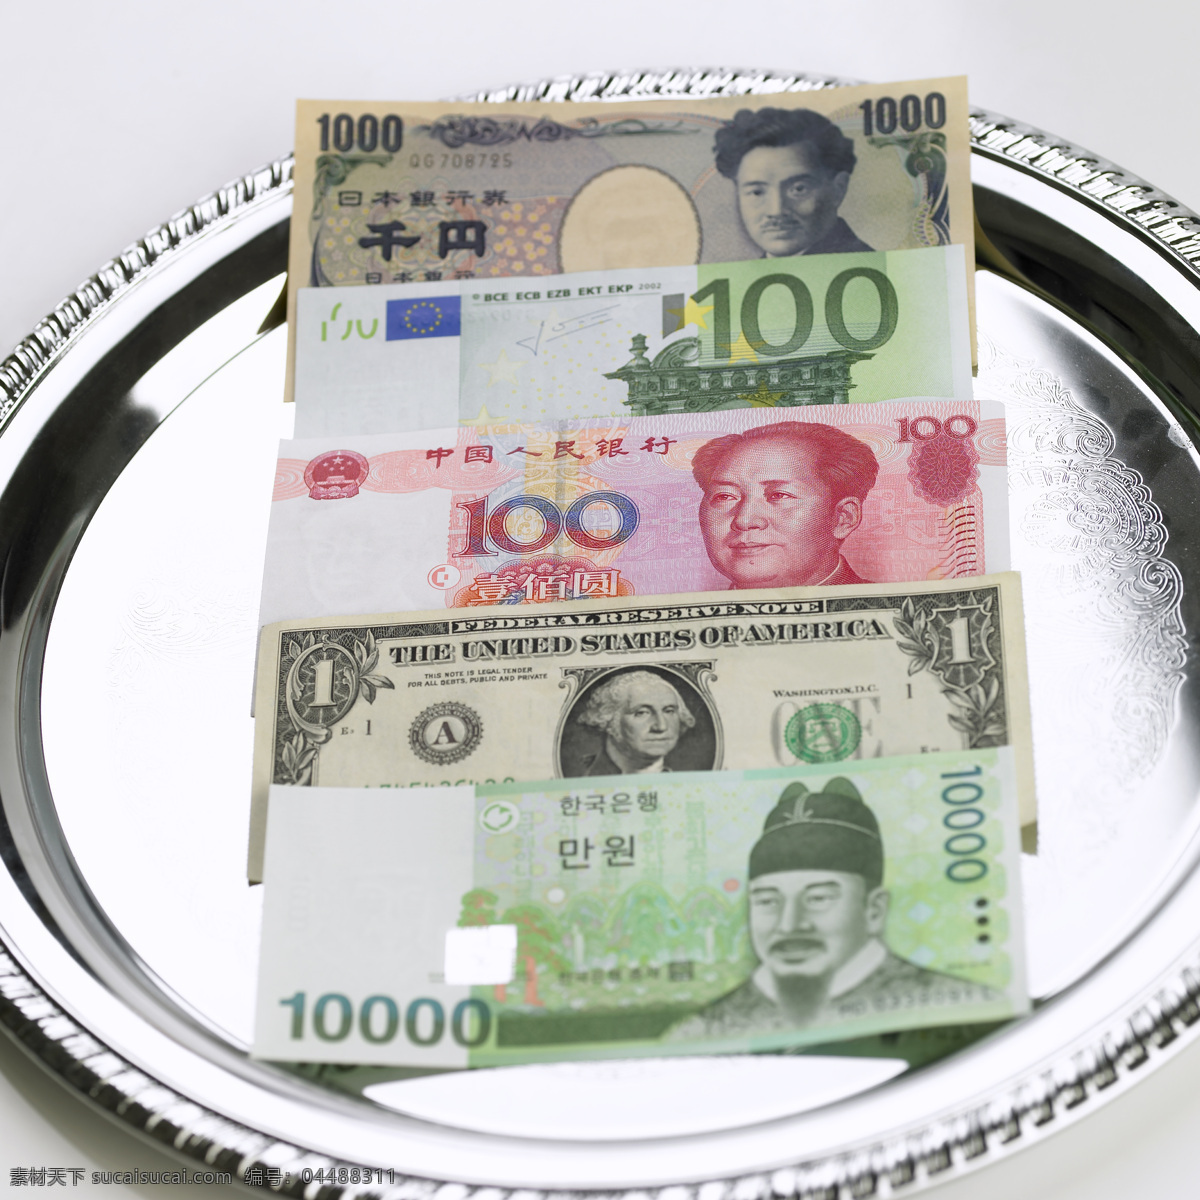 世界货币 人民币 美元 日元 韩元 钞票 货币 纸钞 金钱 现金 金融货币 金融对话 货币兑换 世界经济 商务金融